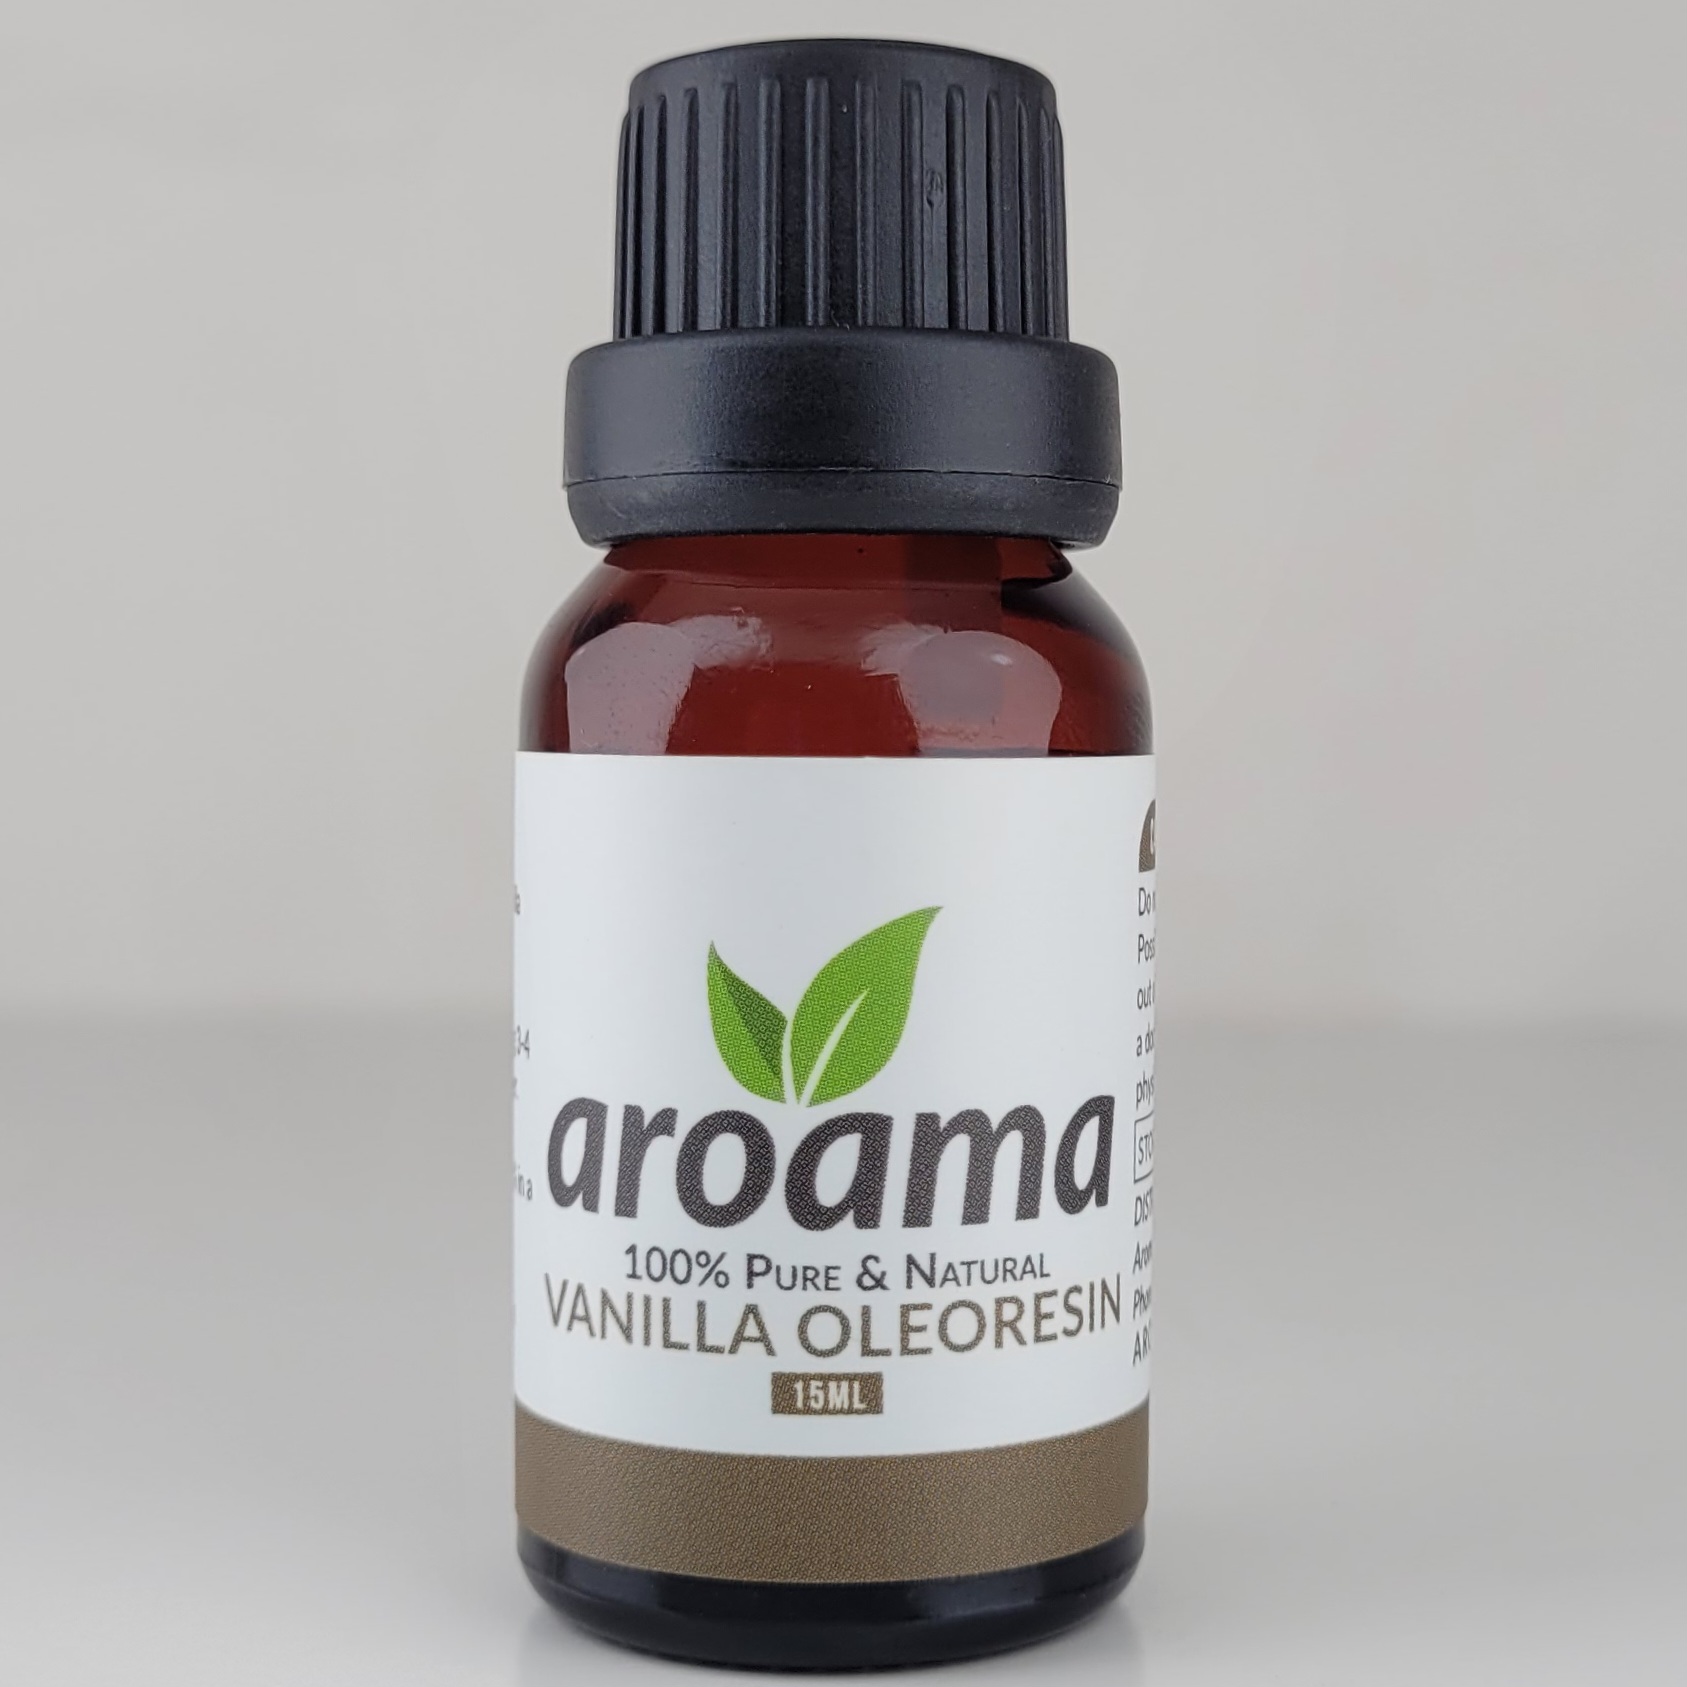 Vanilla Essential Oil